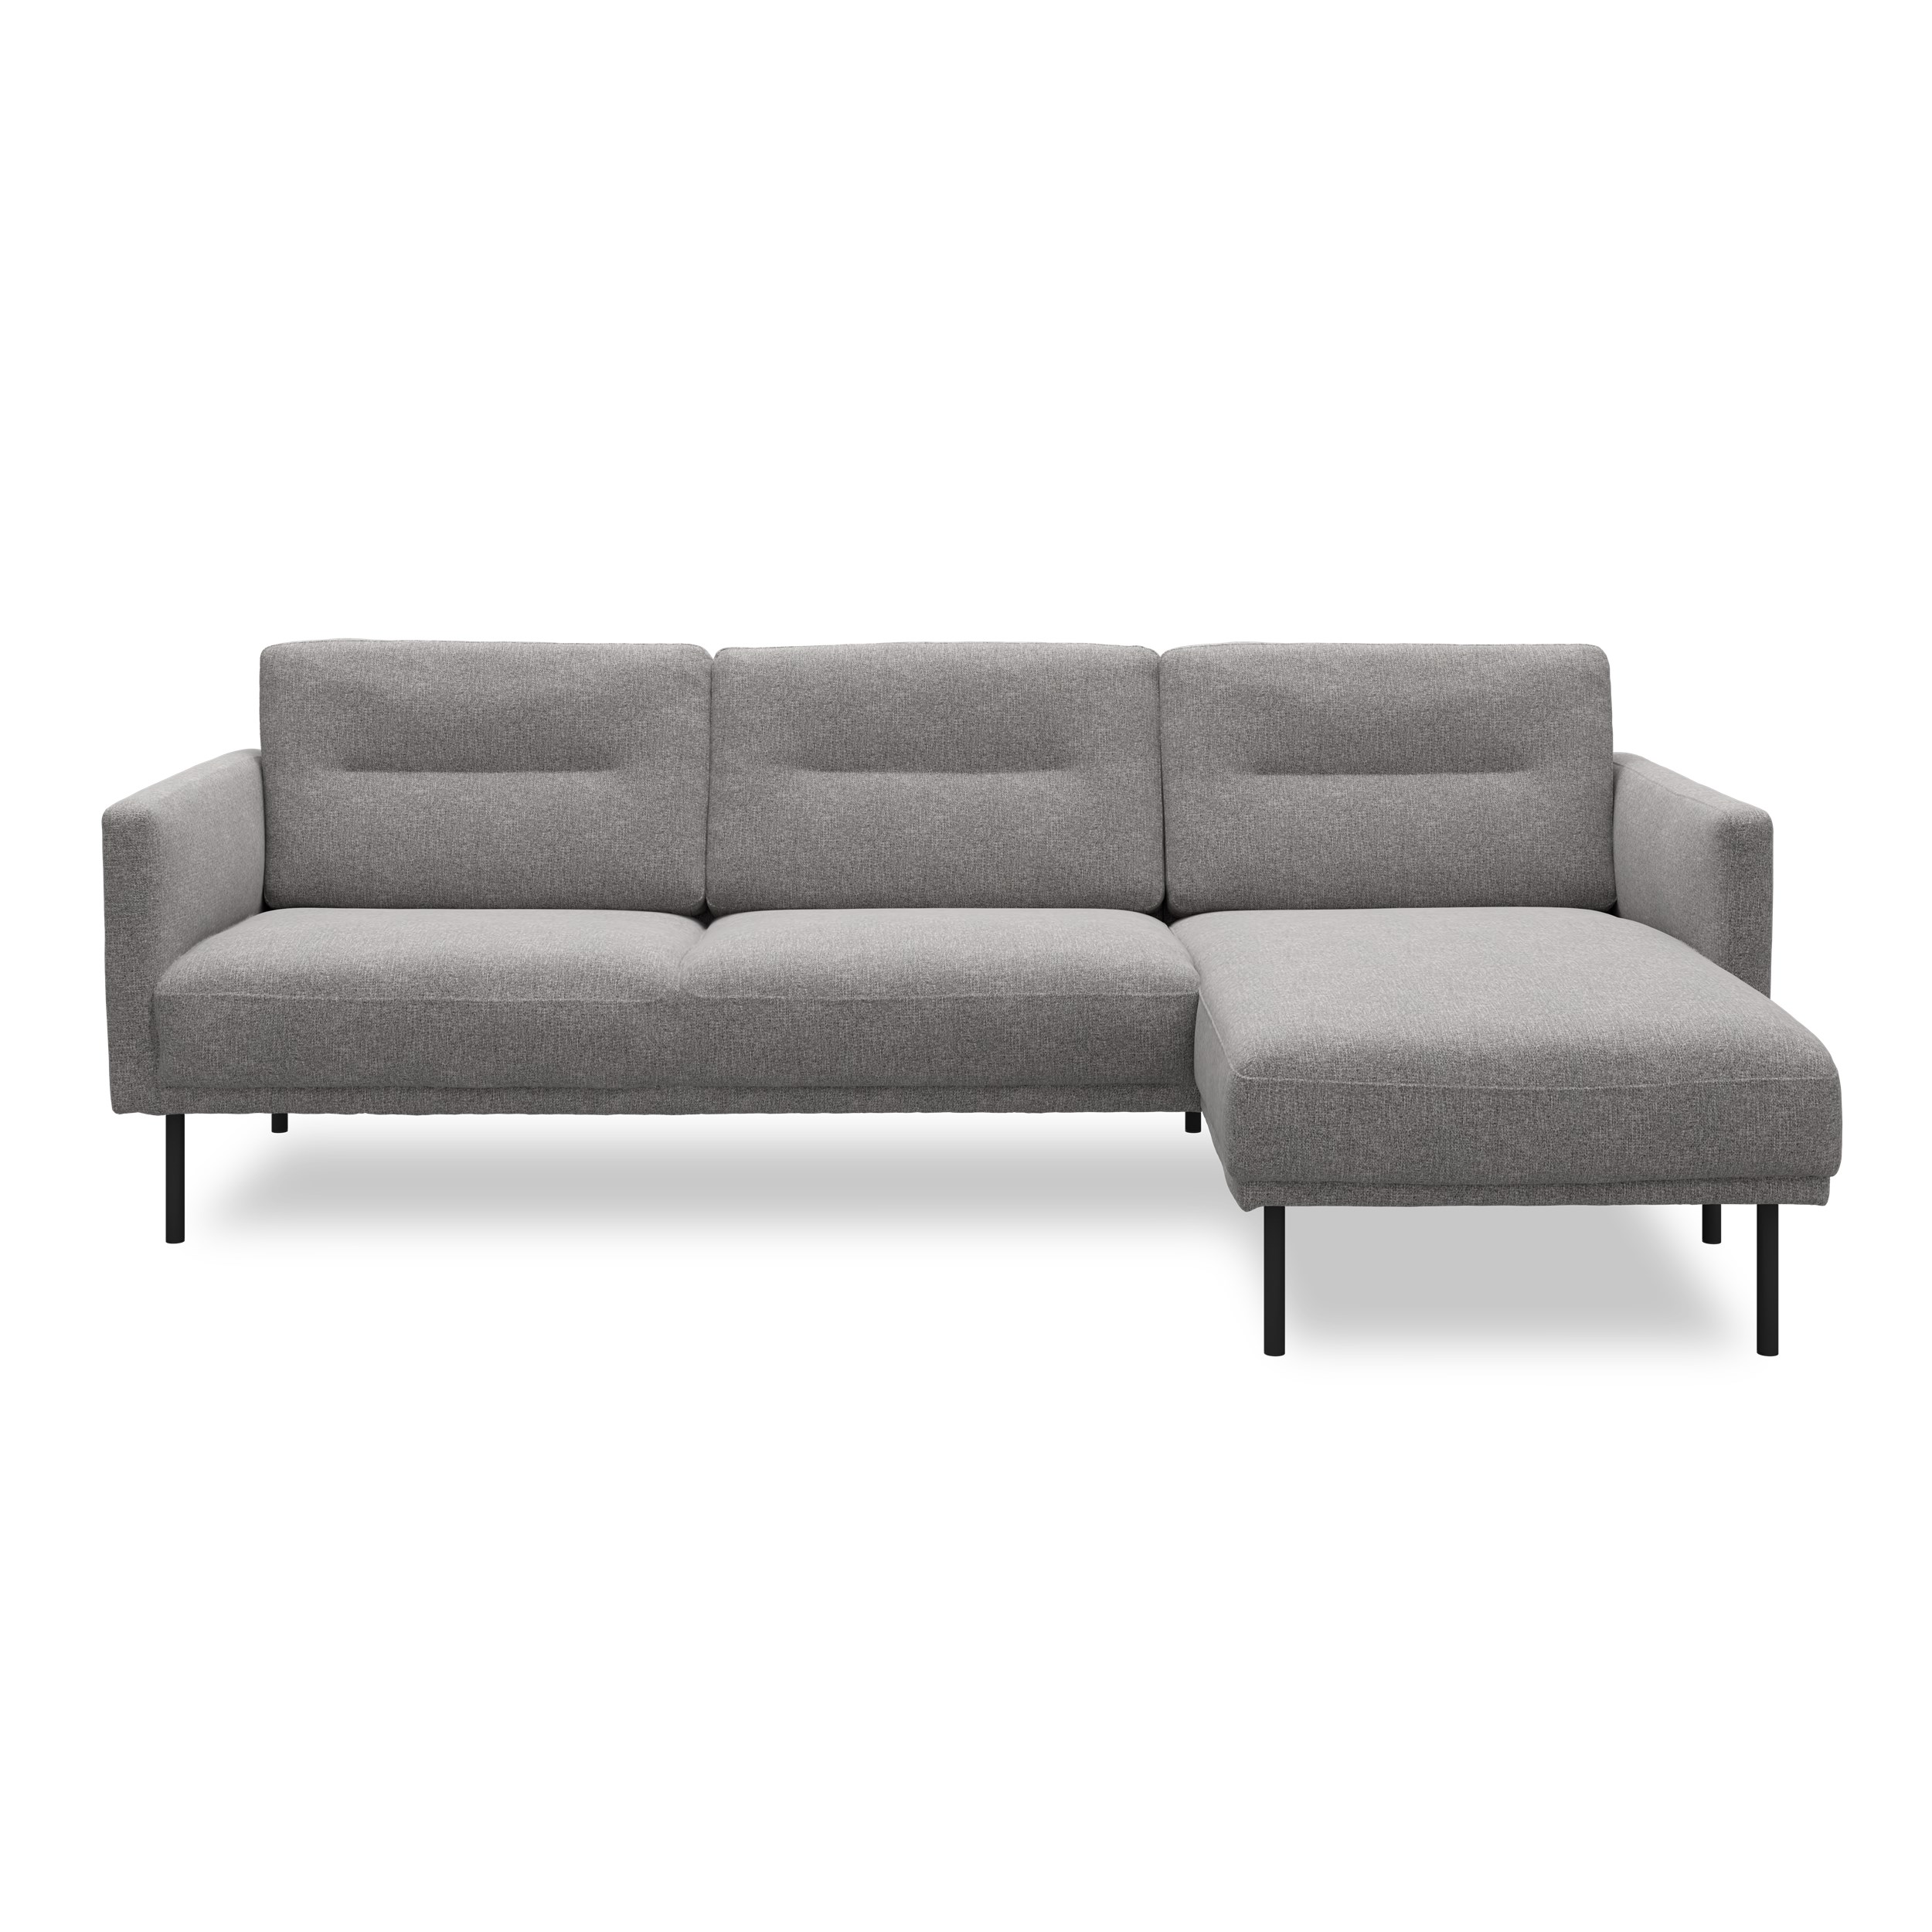 Larvik højrevendt sofa med chaiselong - Hampton 371 Grey stof og ben i sortlakeret metal